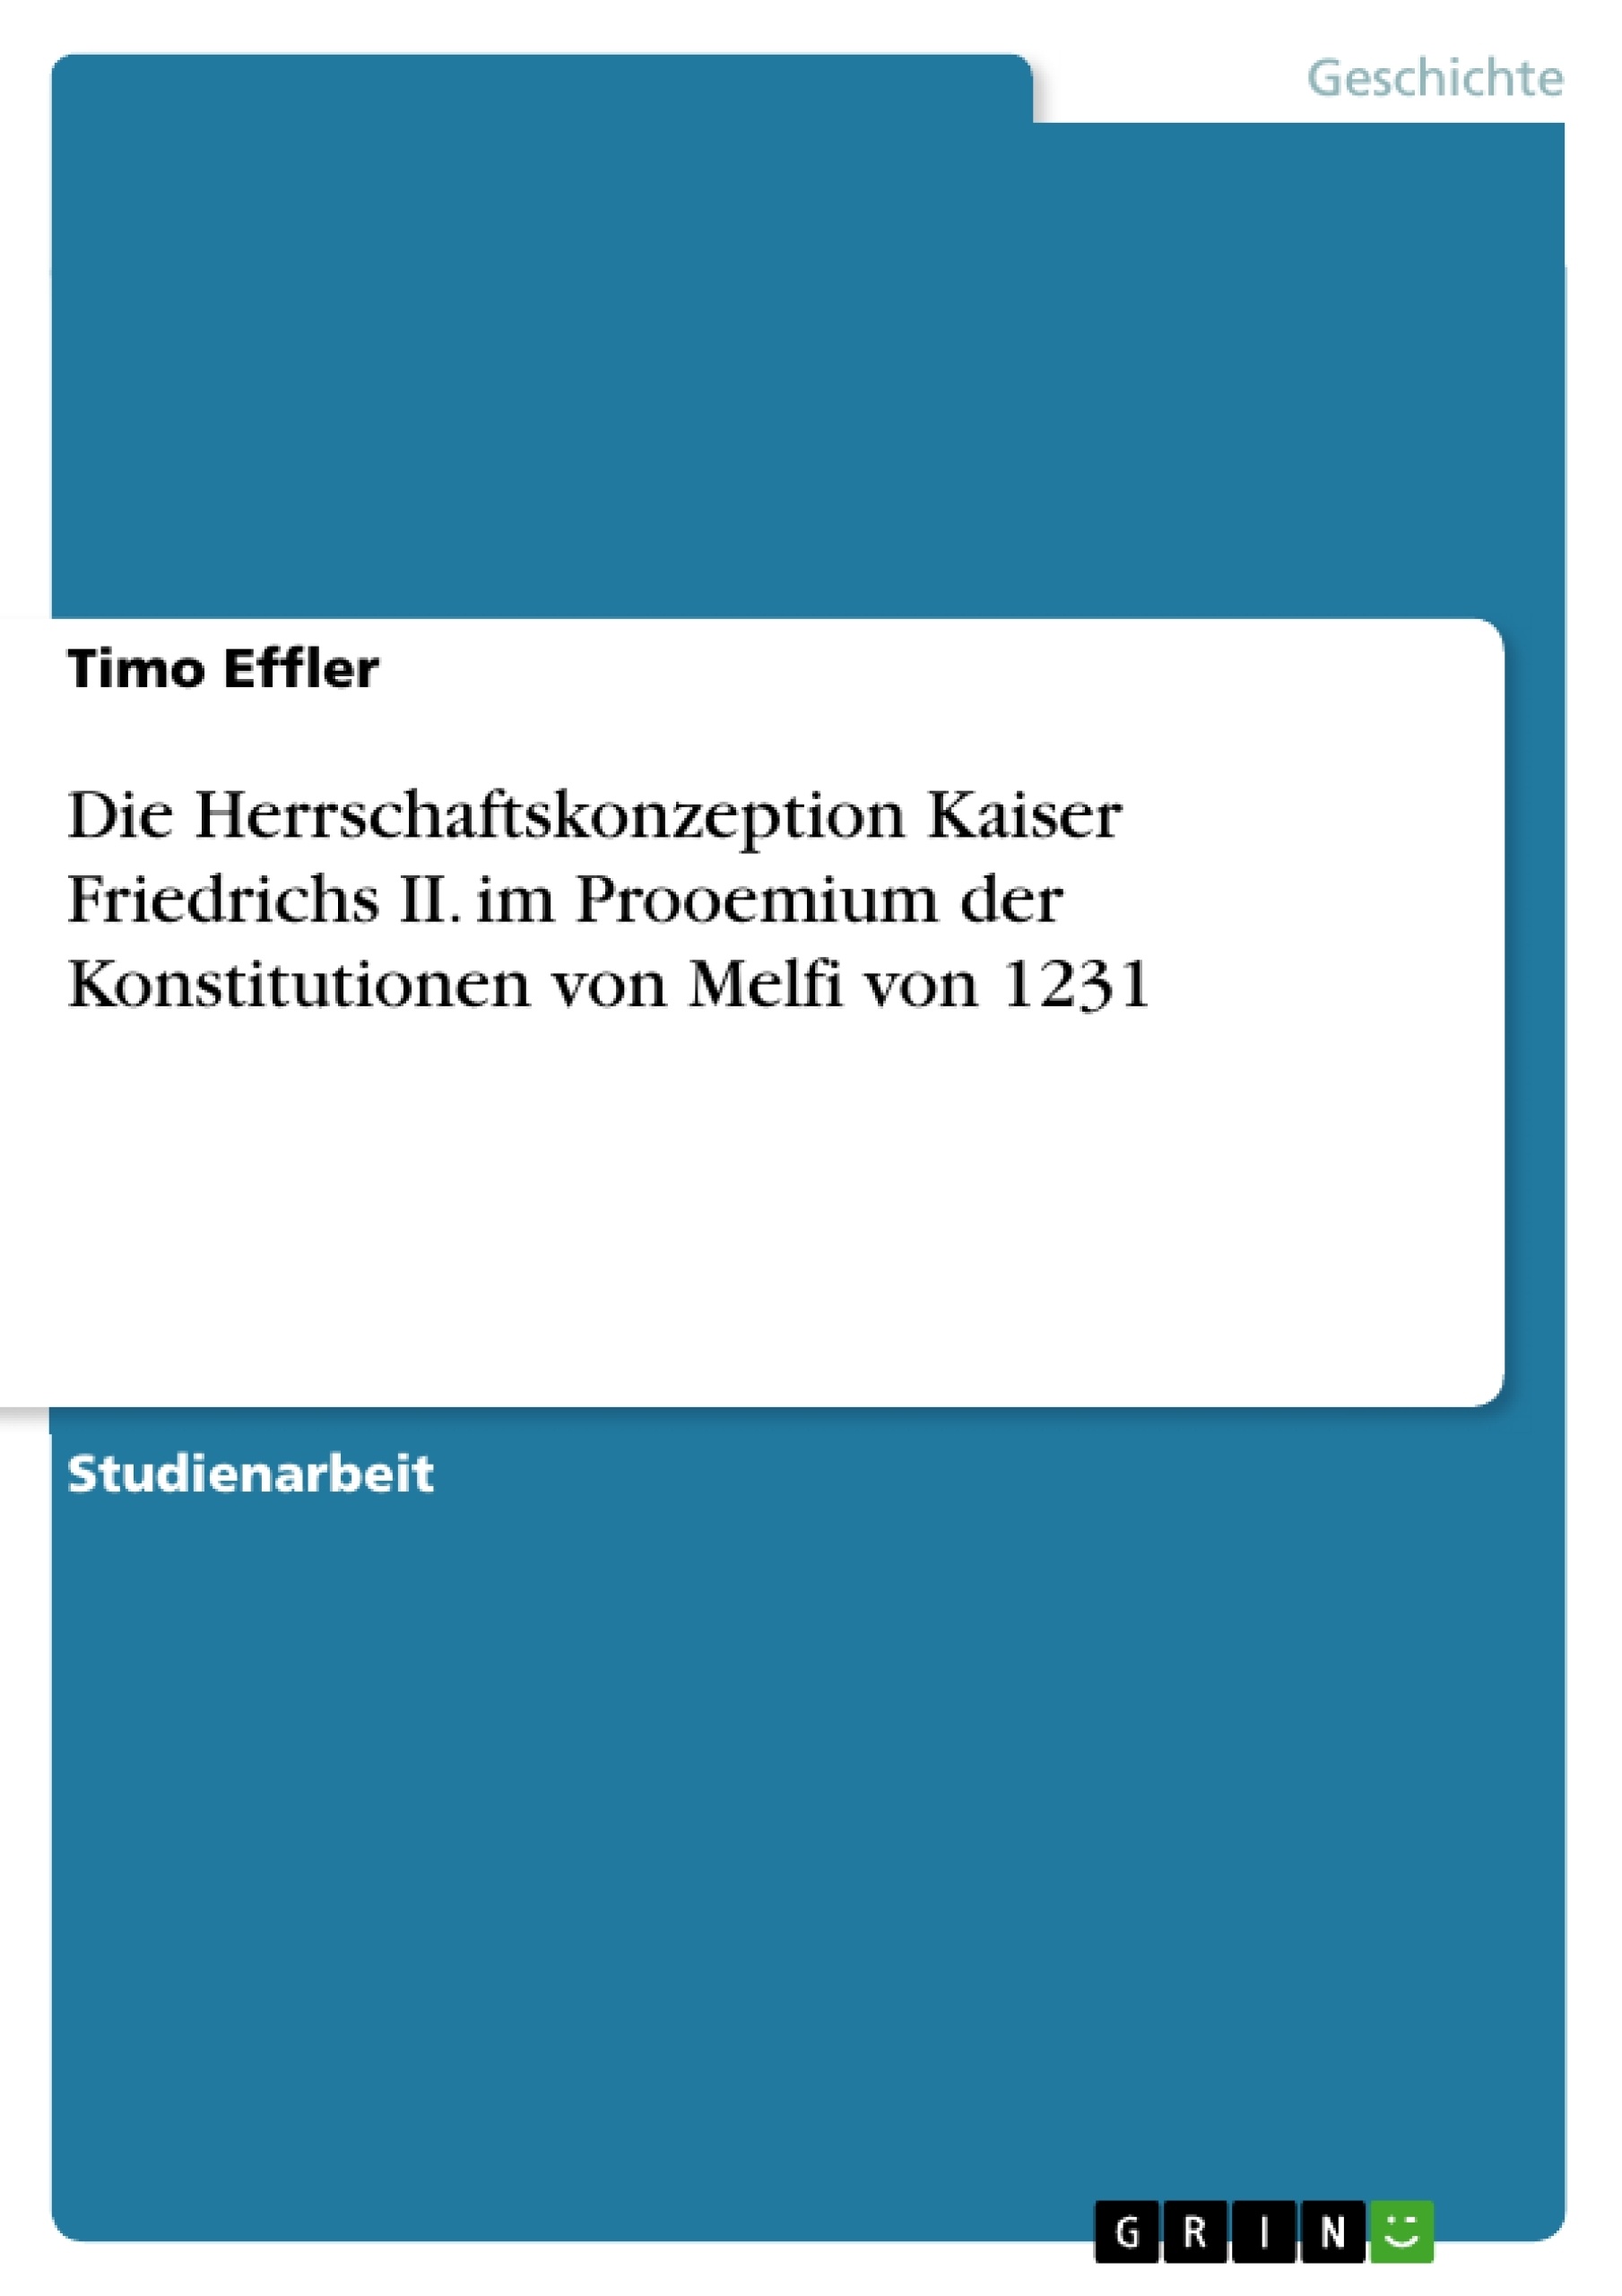 Título: Die Herrschaftskonzeption Kaiser Friedrichs II. im Prooemium der Konstitutionen von Melfi von 1231